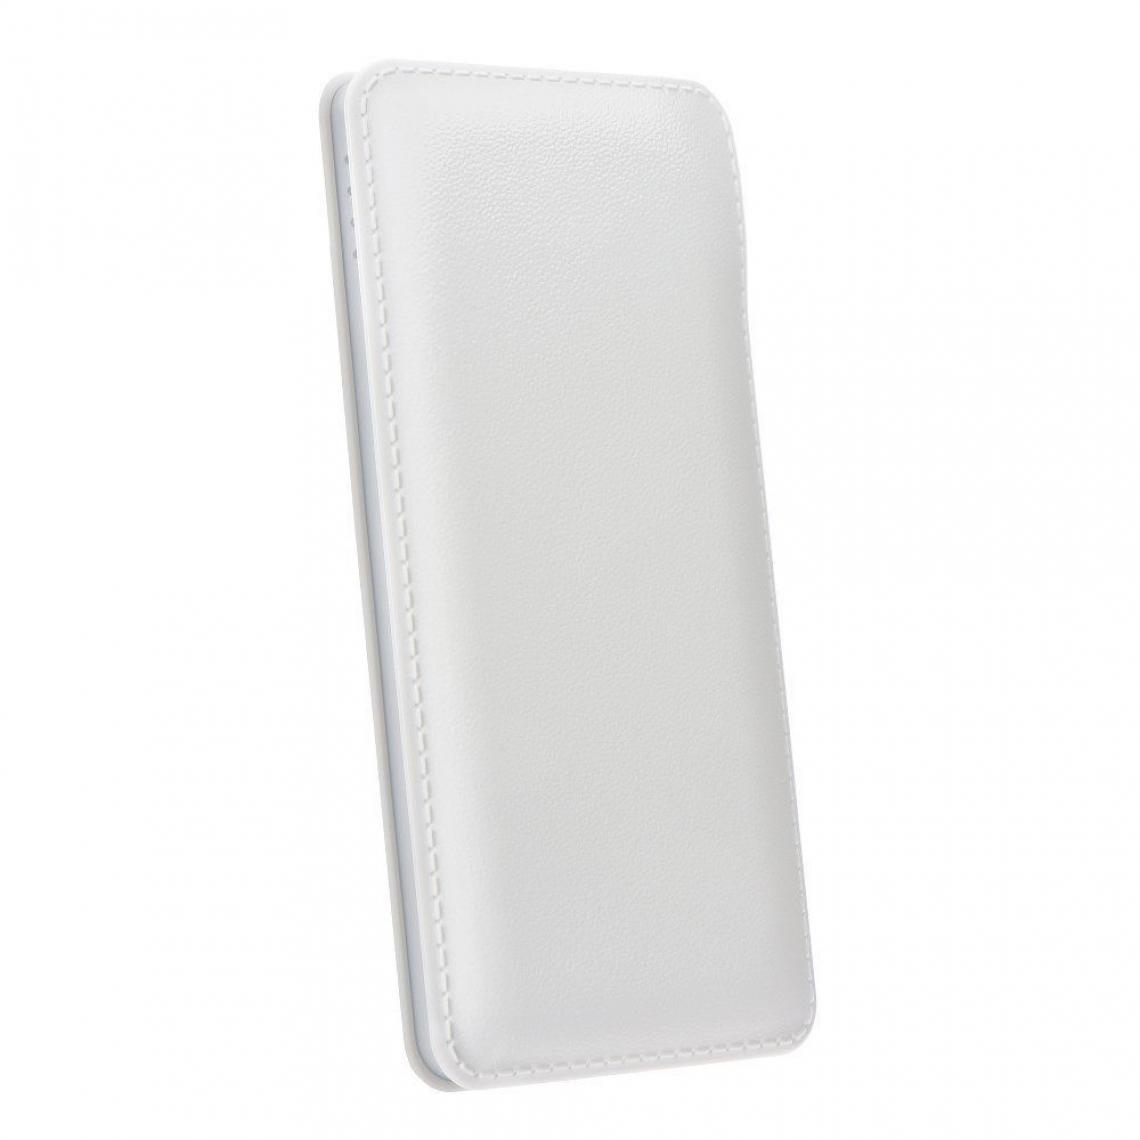 Ozzzo - Chargeur batterie externe 30000 mAh powerbank ozzzo blanc pour LG W10 - Autres accessoires smartphone